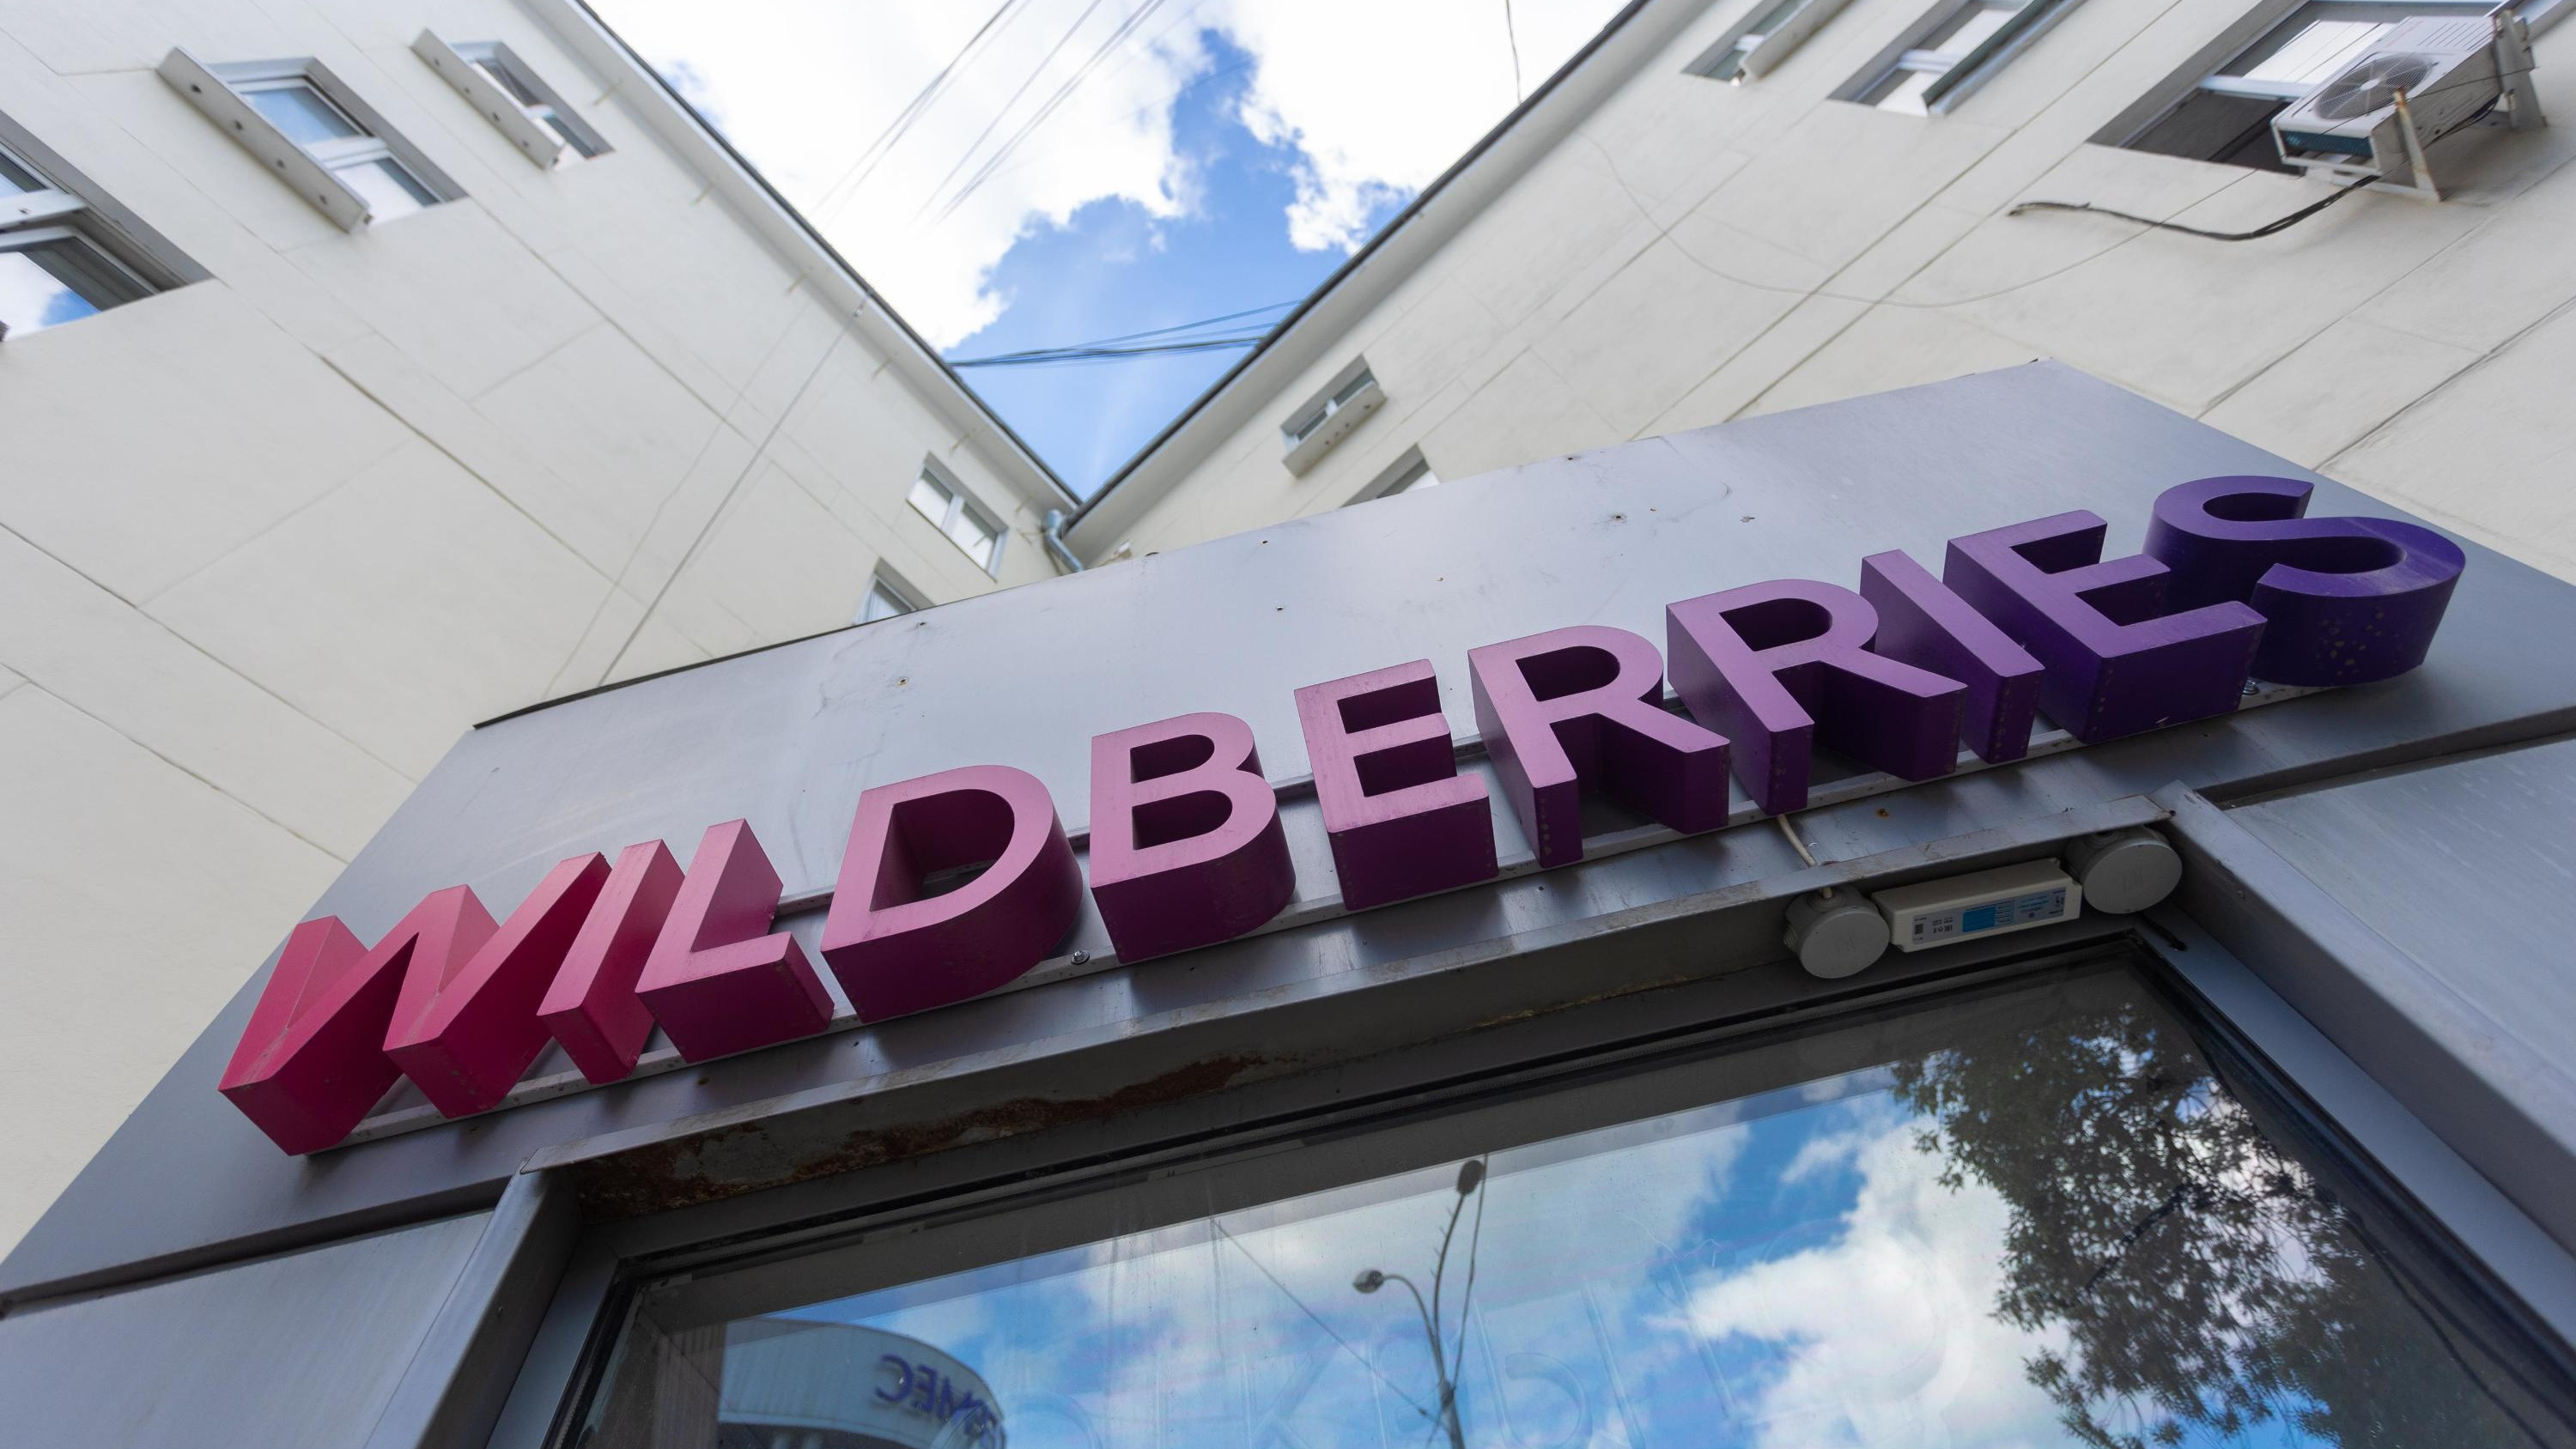 Сразу в нескольких регионах России в Wildberries стала отображаться платная доставка. Нижний Новгород тоже в списке?